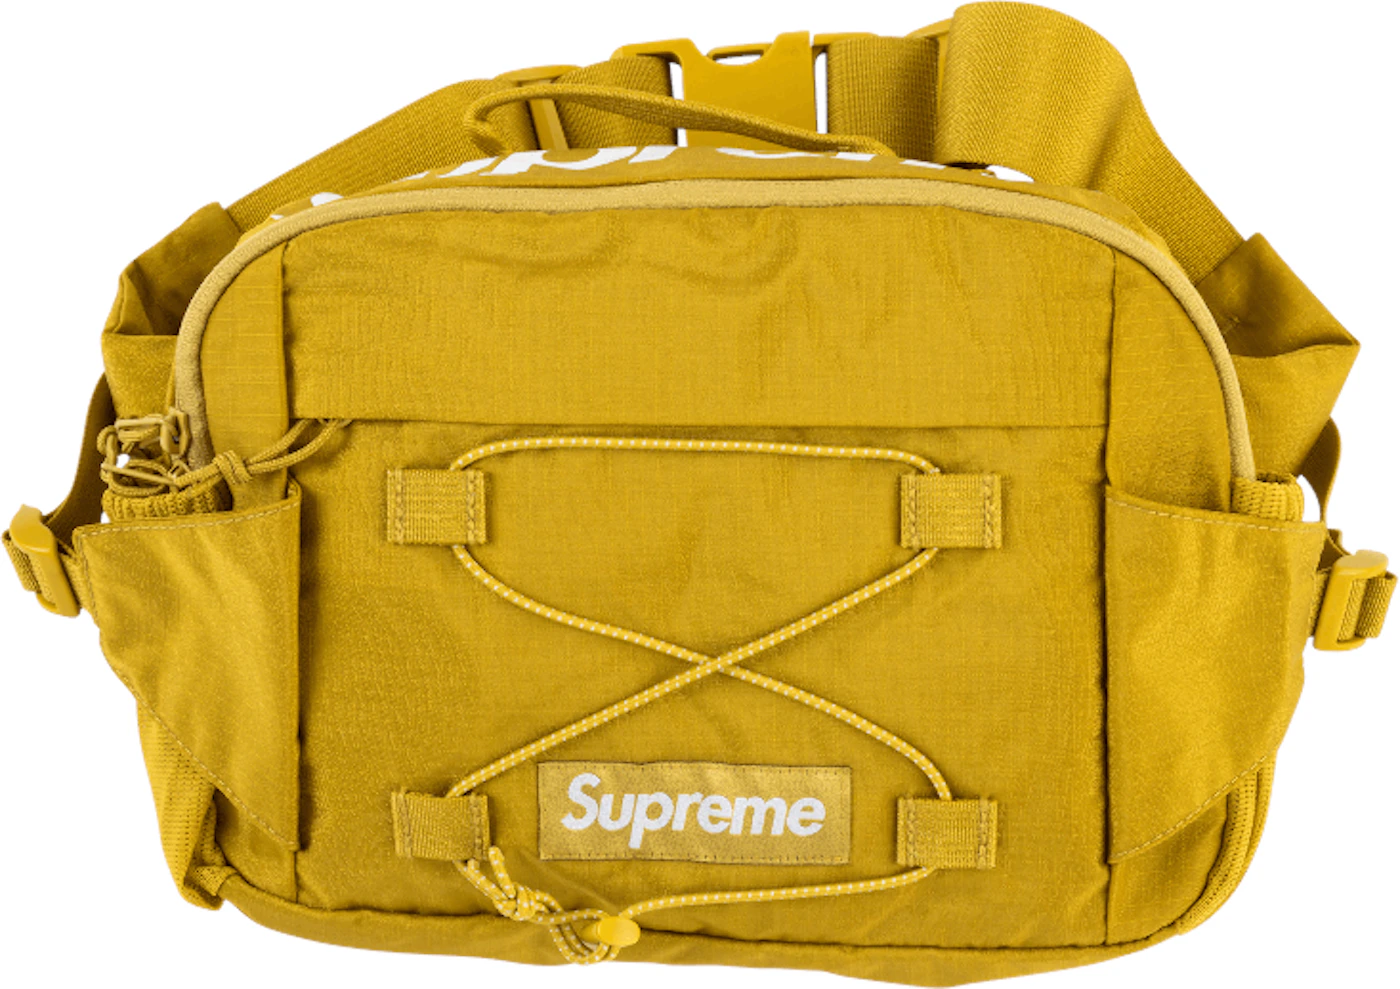 Supreme Waist Bag Acid Green - SS17 - US